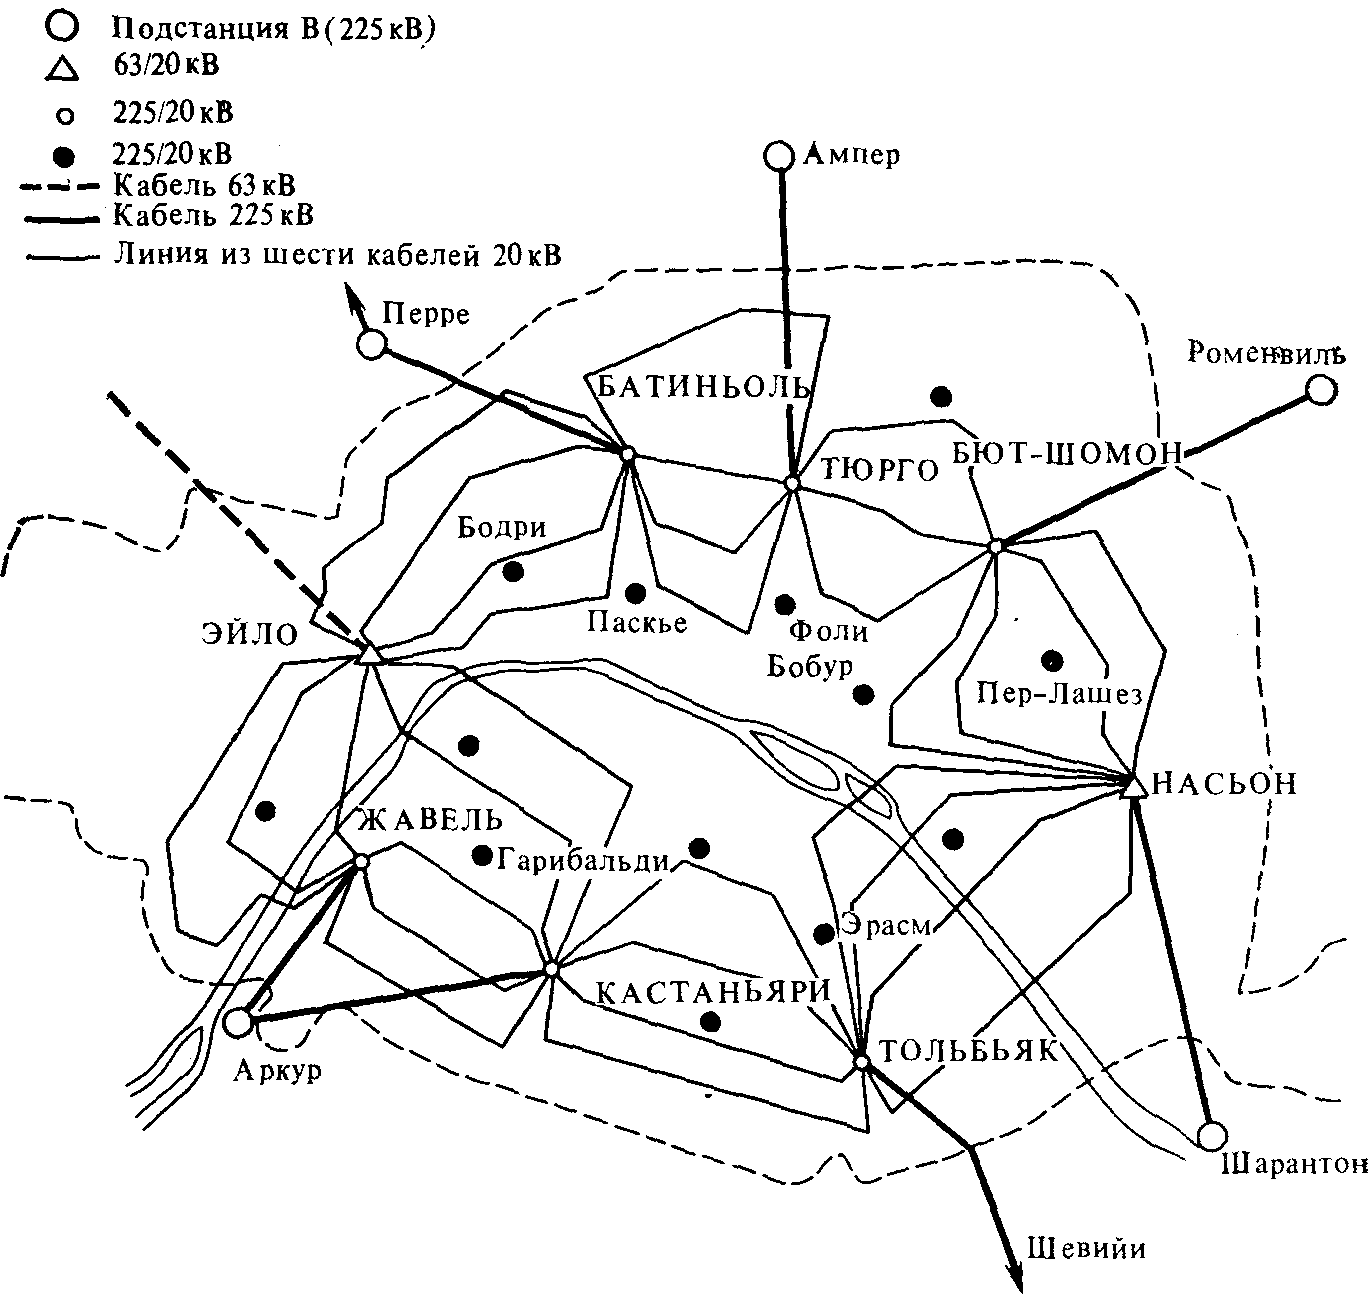 Месторасположение подстанций 225/20 кВ и линий 20 кВ в Париже